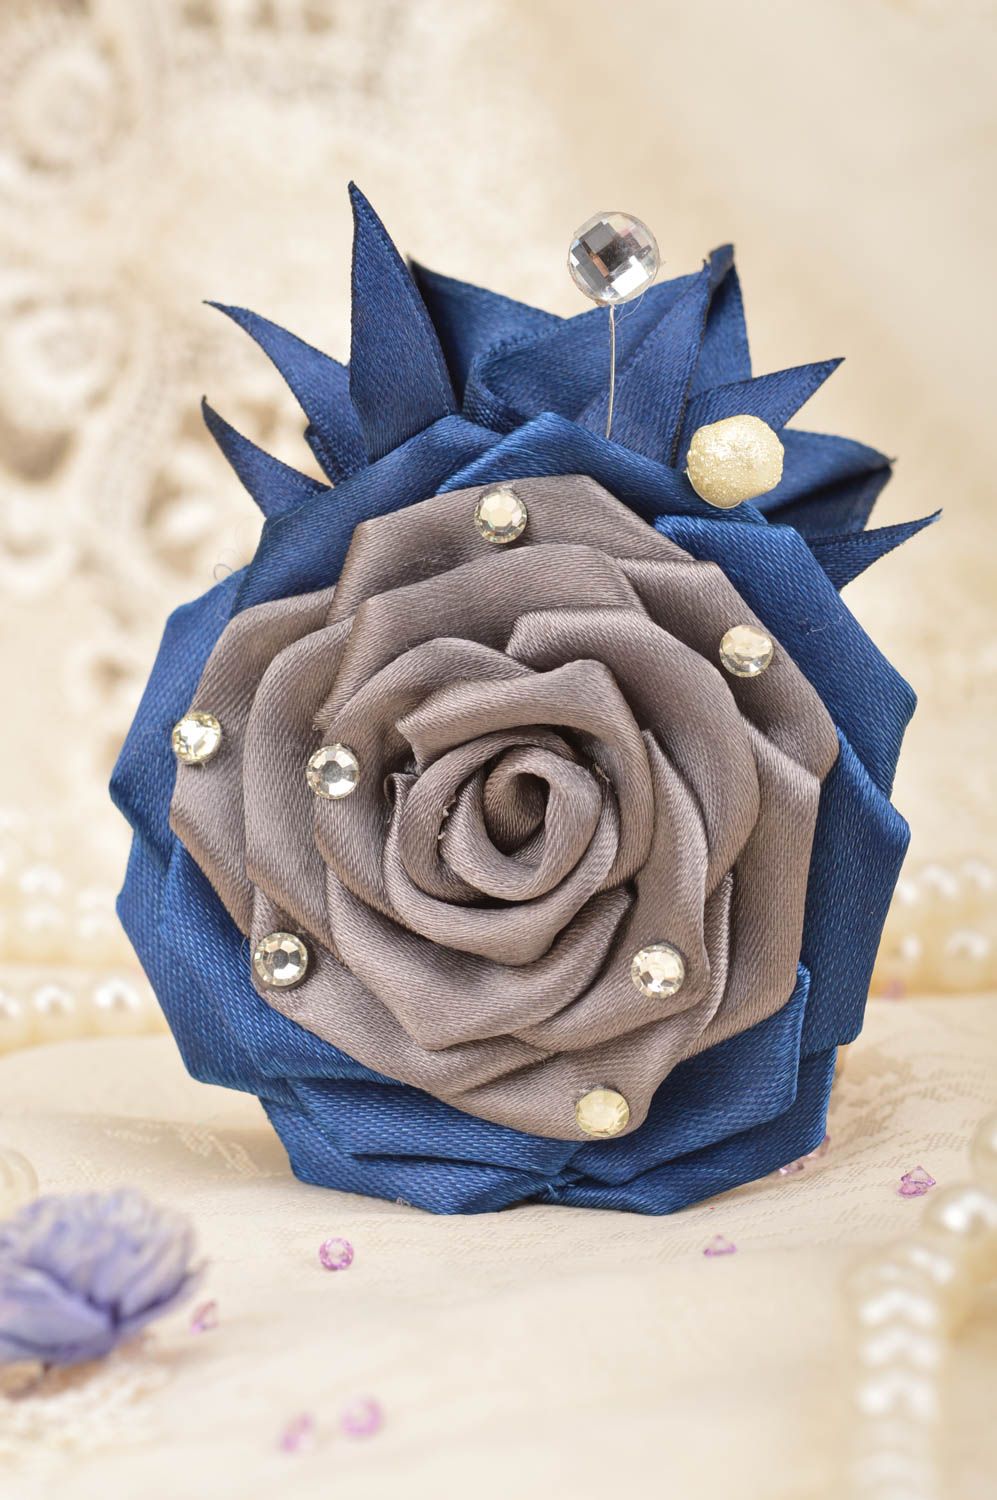 Синяя с серым брошь из атласа ручной работы в виде цветка нарядная красивая фото 1